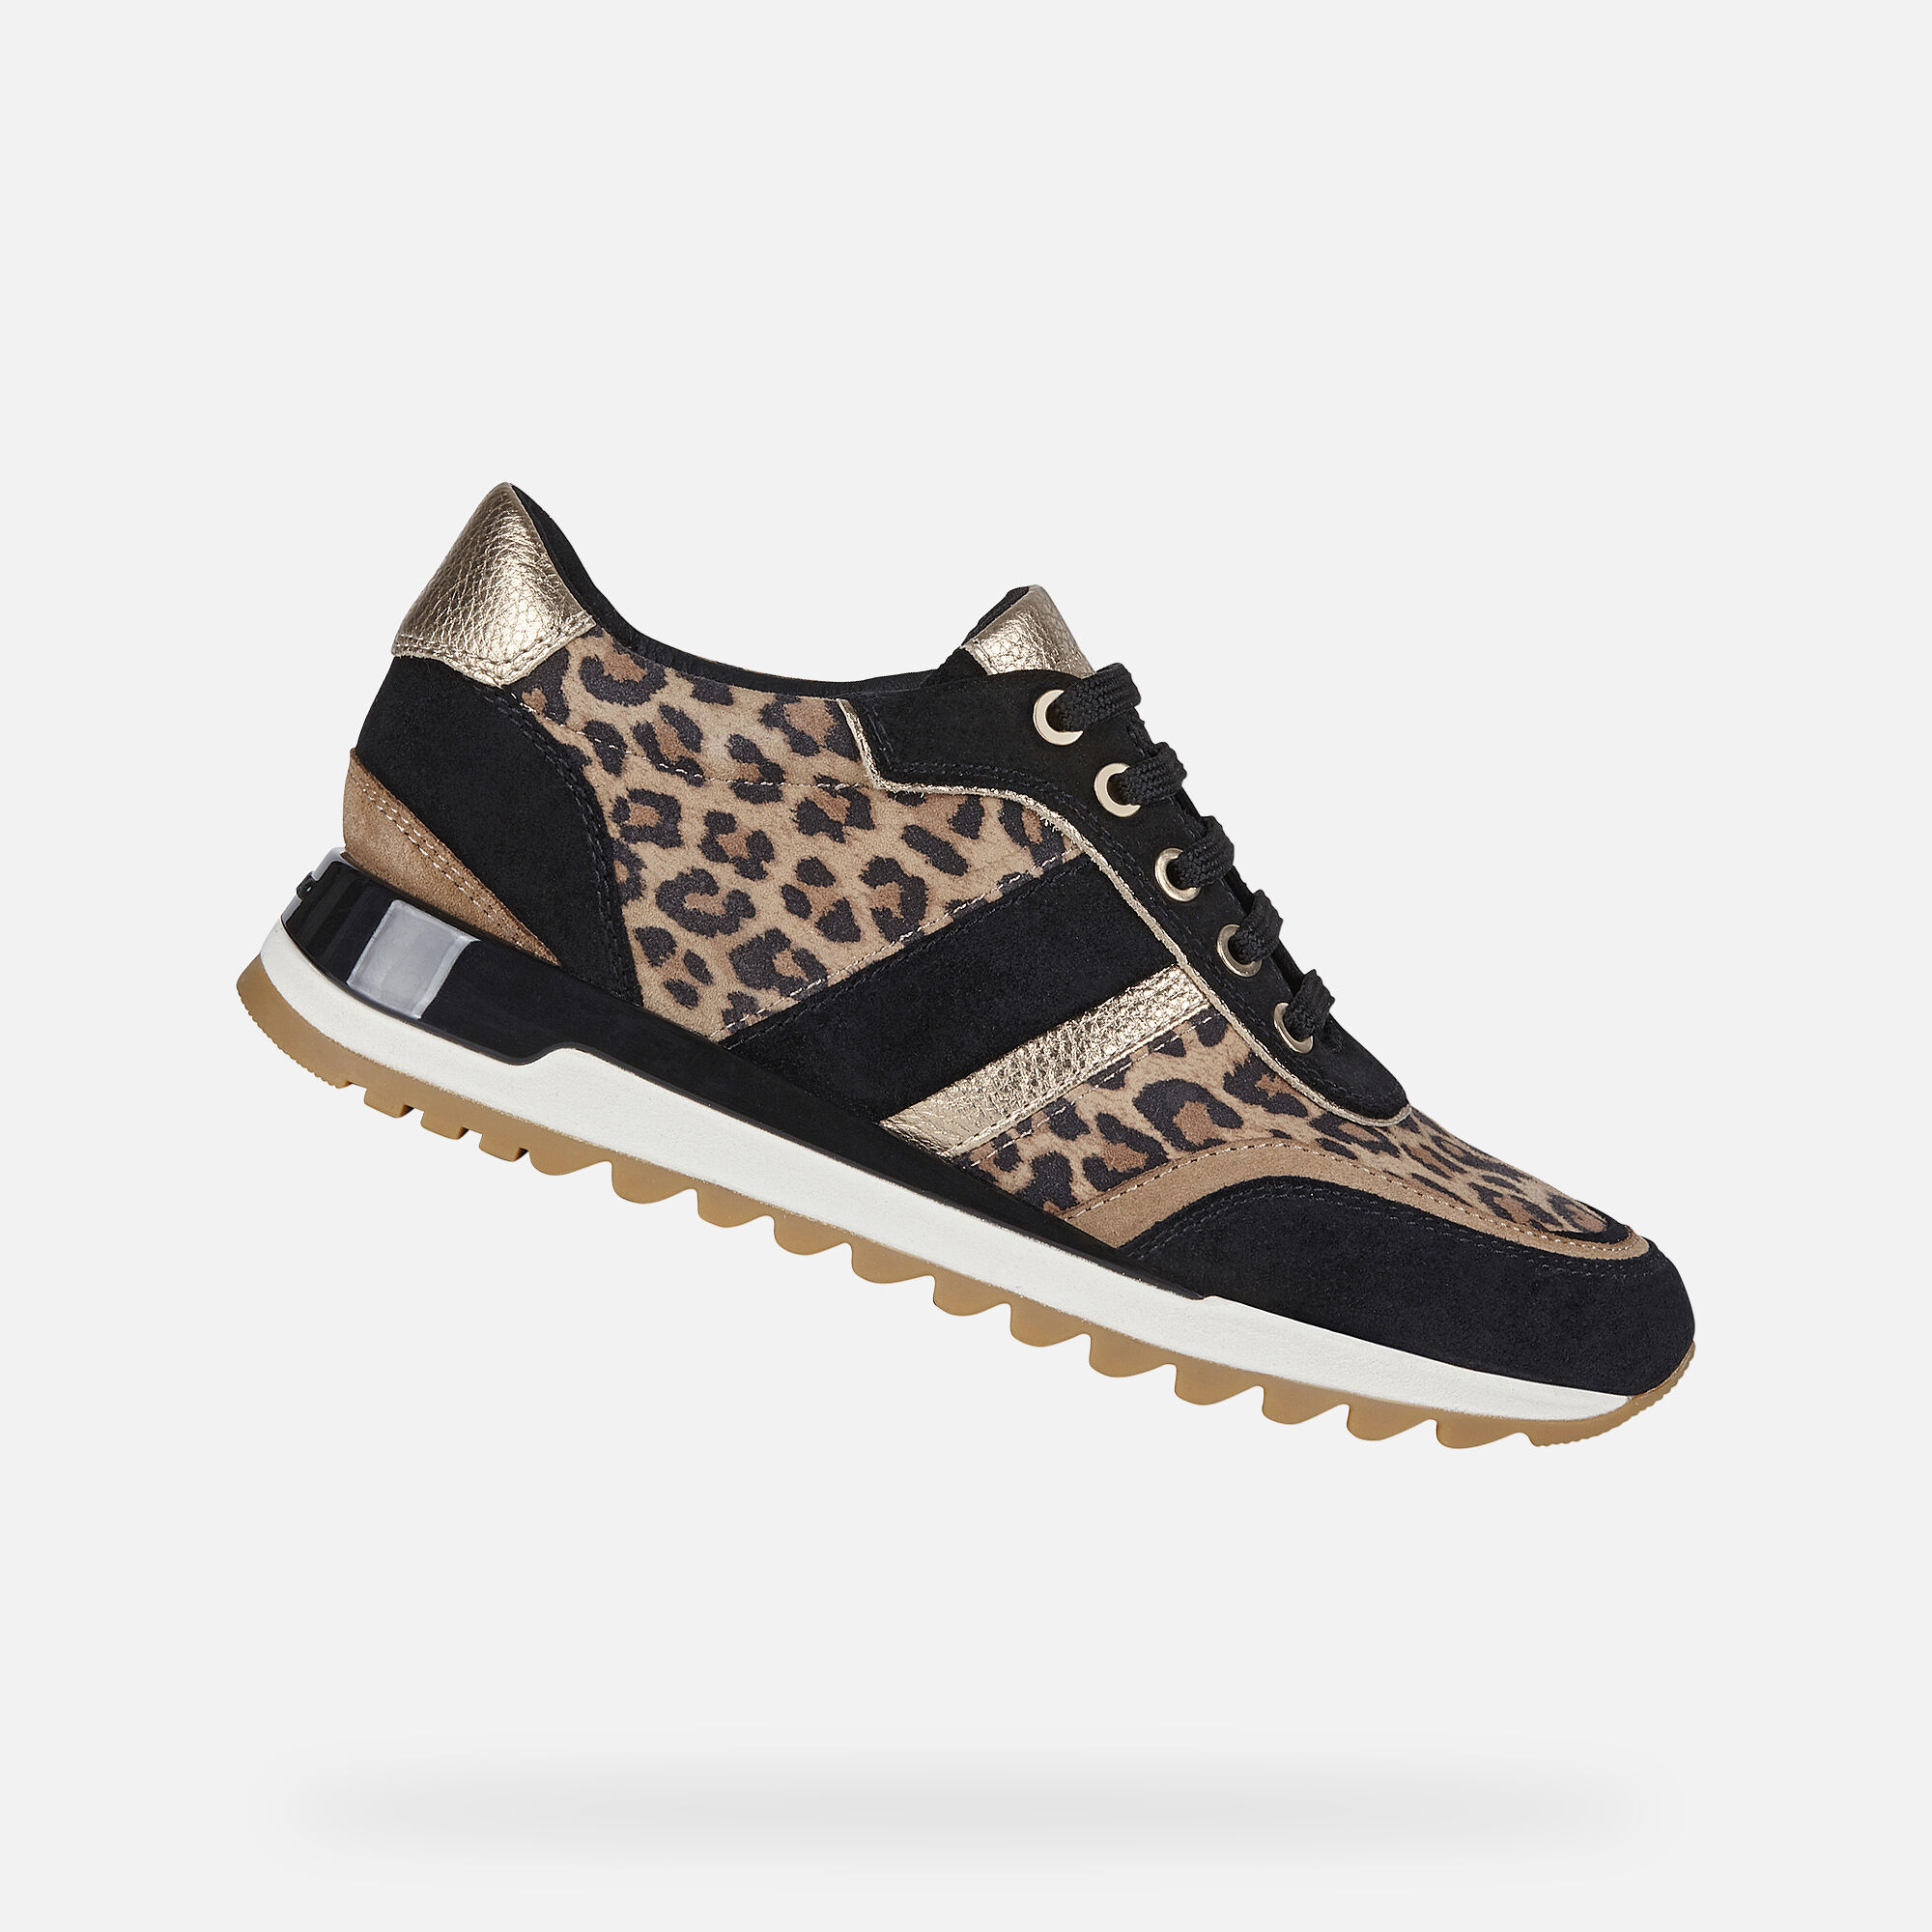 wide fit leopard print sandals